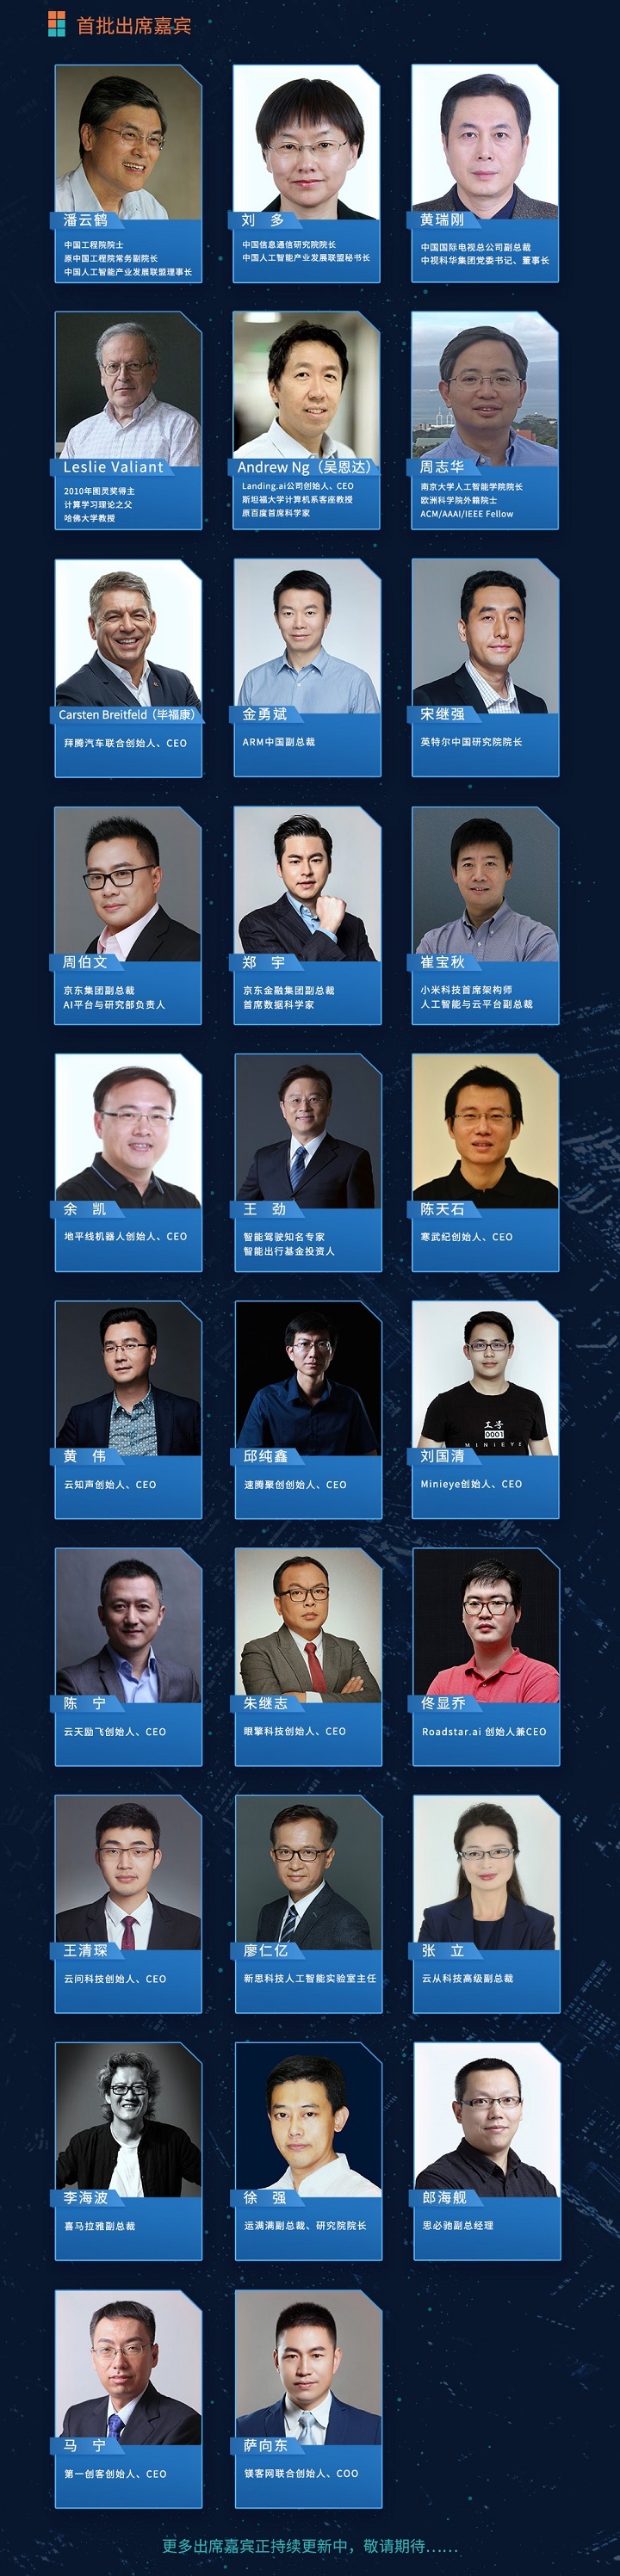 2018中国人工智能峰会前瞻：重量级嘉宾持续加持